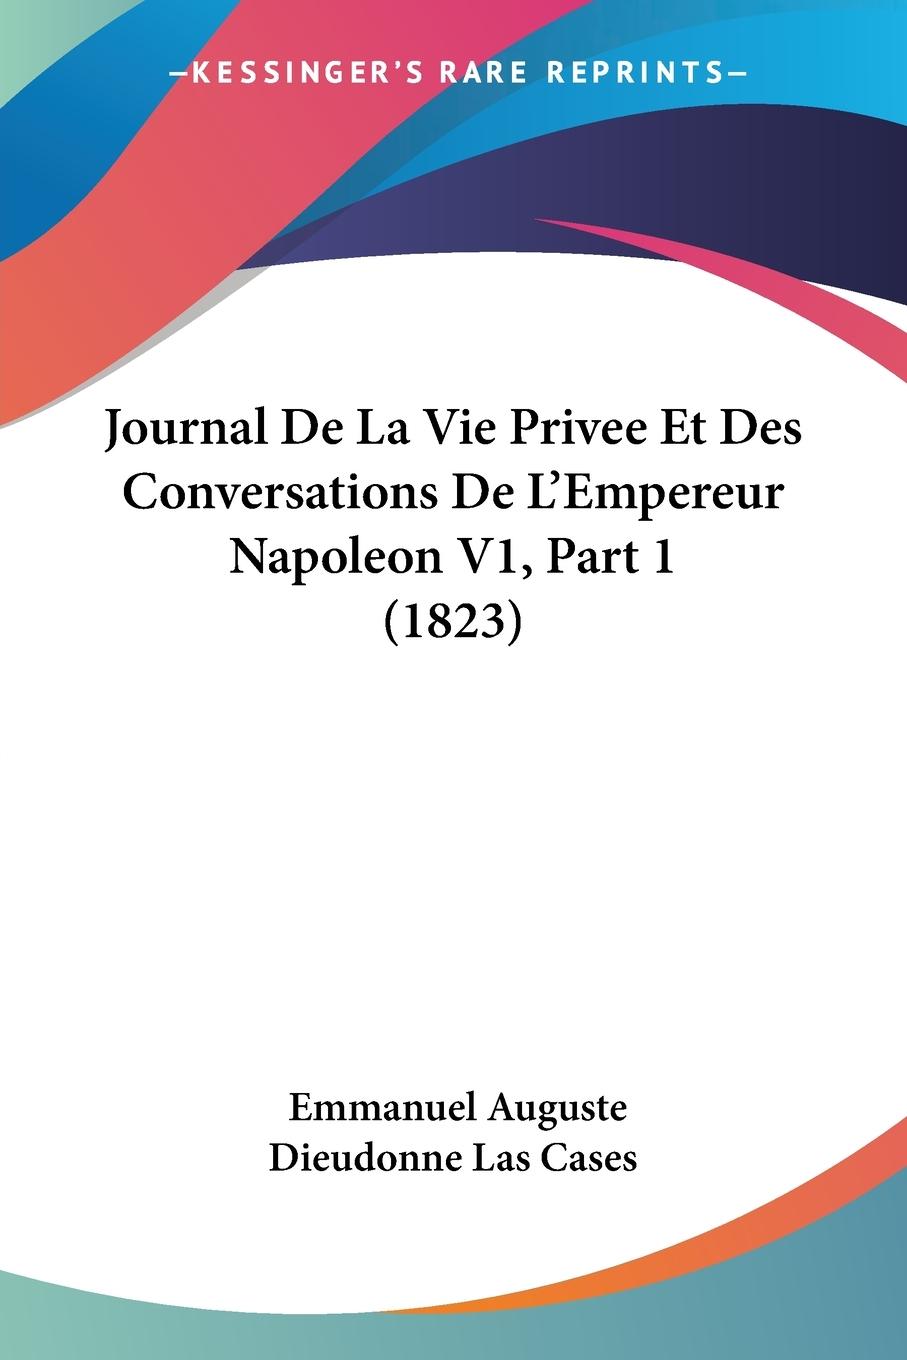 Journal De La Vie Privee Et Des Conversations De L Empereur Napoleon V1, Part 1 (1823) - Cases, Emmanuel Auguste Dieudonne Las